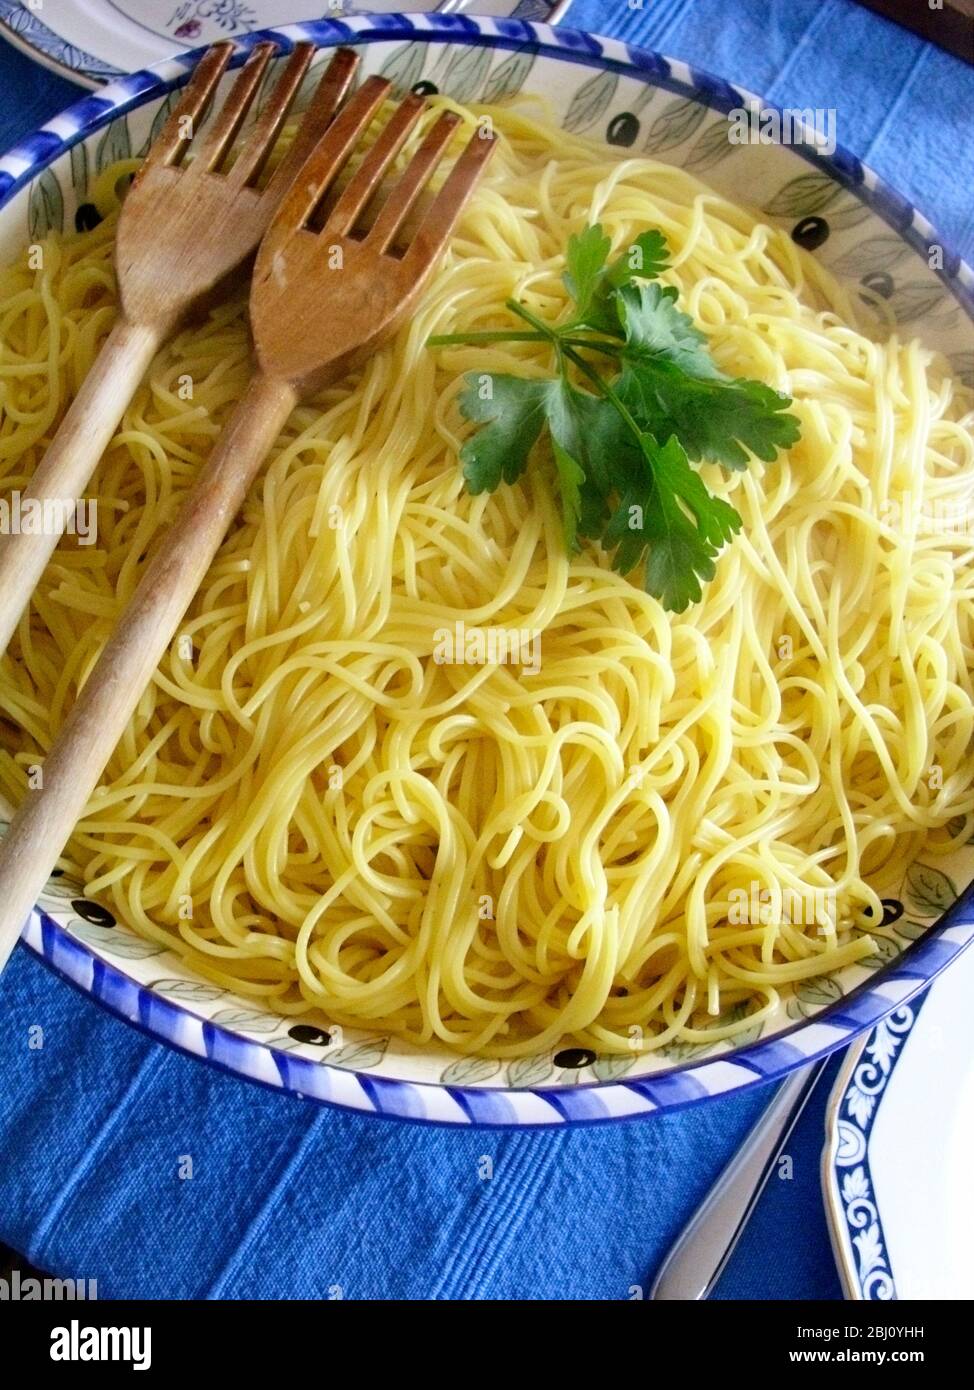 Eine große Keramikschale Spaghetti garniert mit flacher Petersilie auf blauem Tuch - Stockfoto